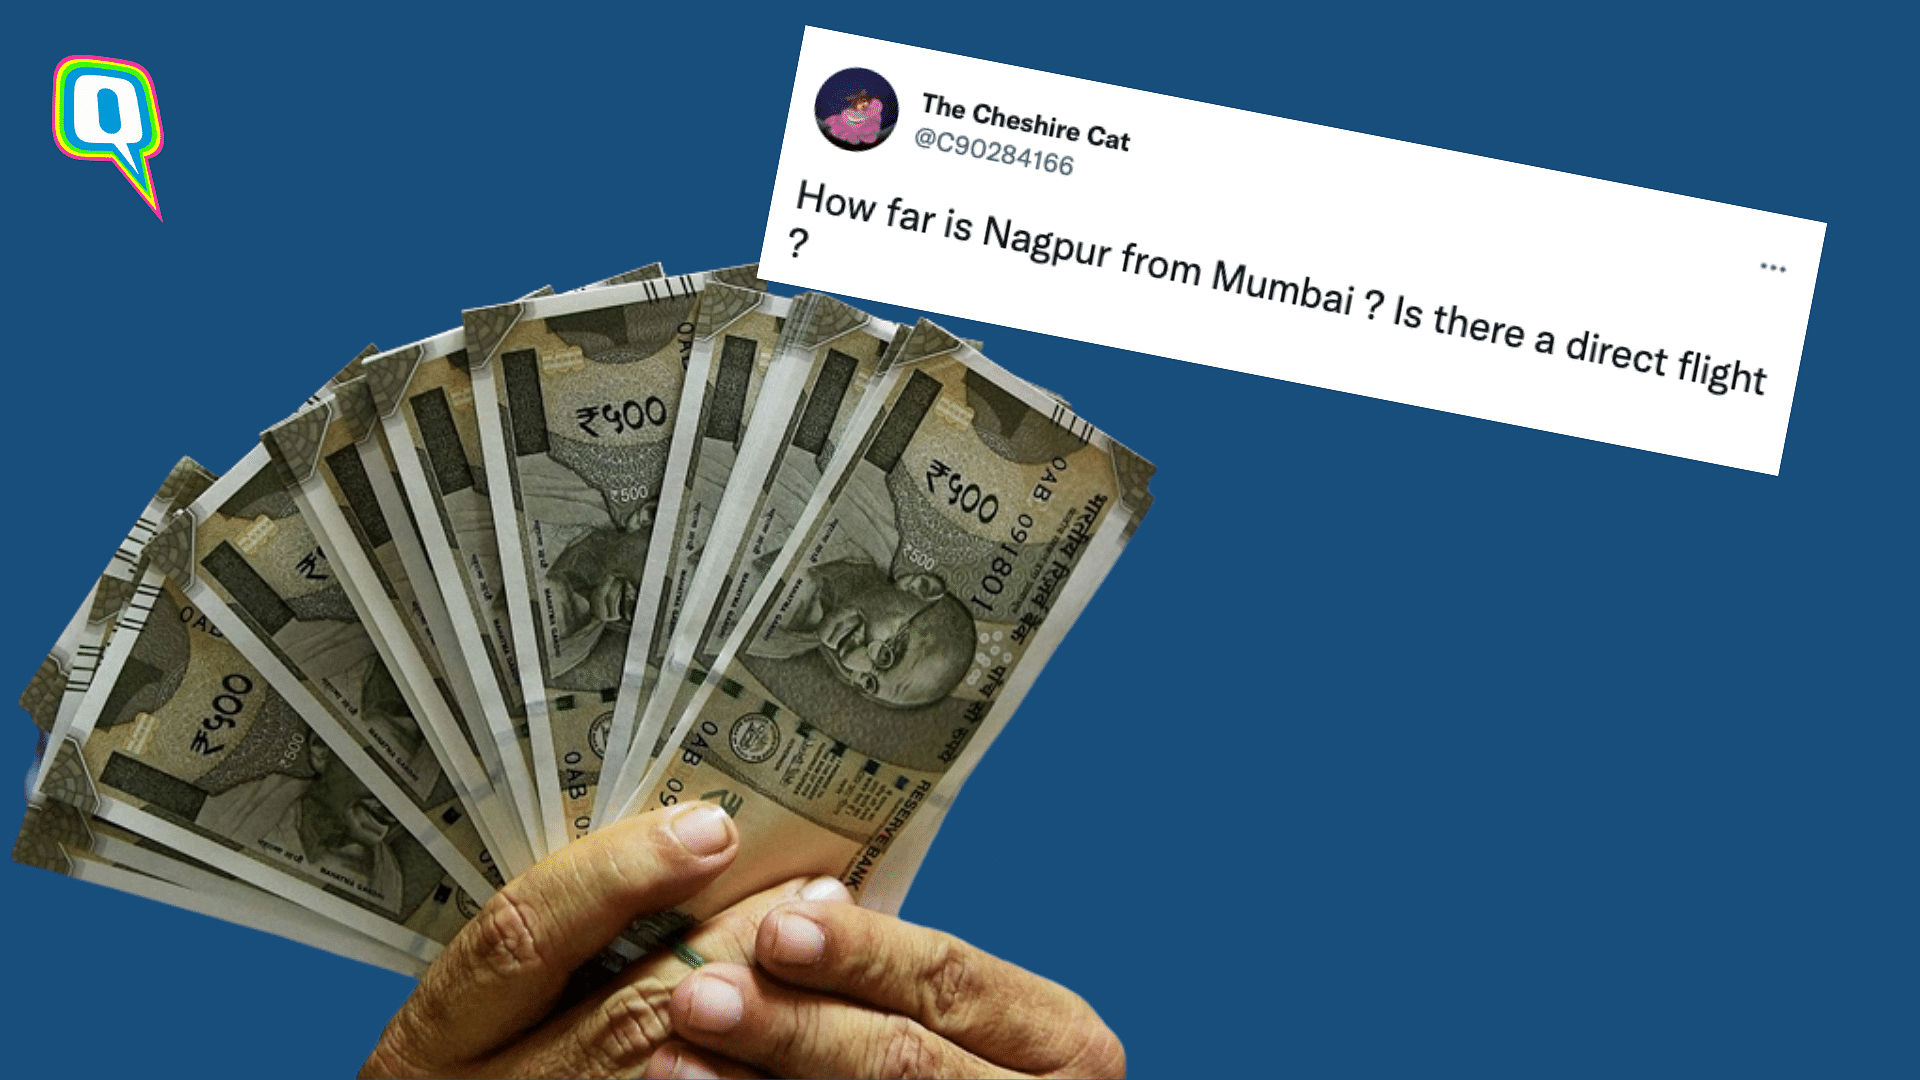 <div class="paragraphs"><p>Nagpur ATM dispenses 5 times cash; Twitter reacts</p></div>